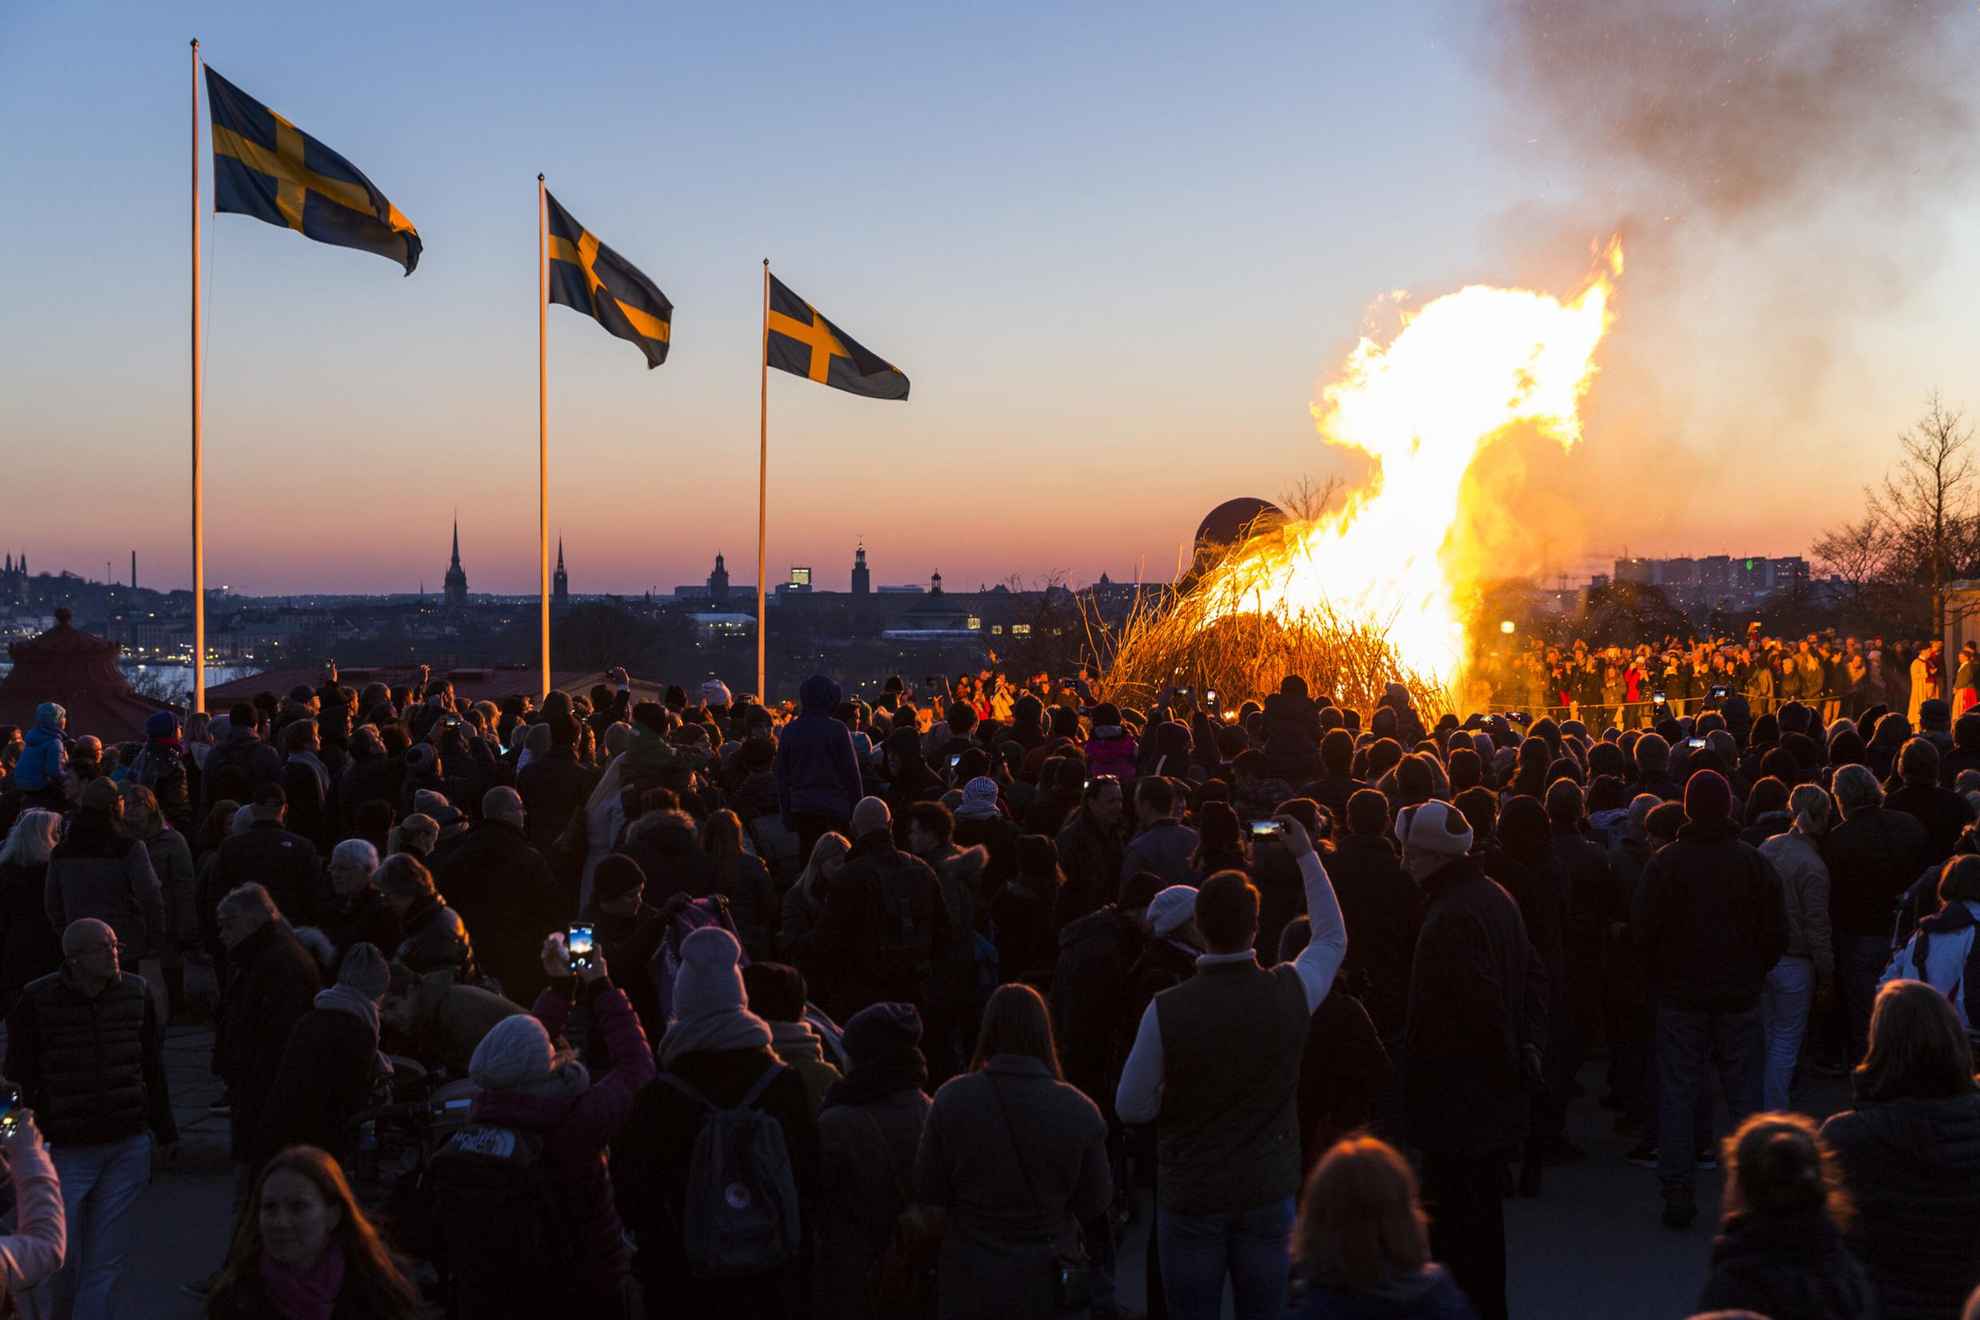 Menschen haben sich um ein Lagerfeuer versammelt, um die Walpurgisnacht zu feiern. Drei schwedische Fahnen wehen im Wind.